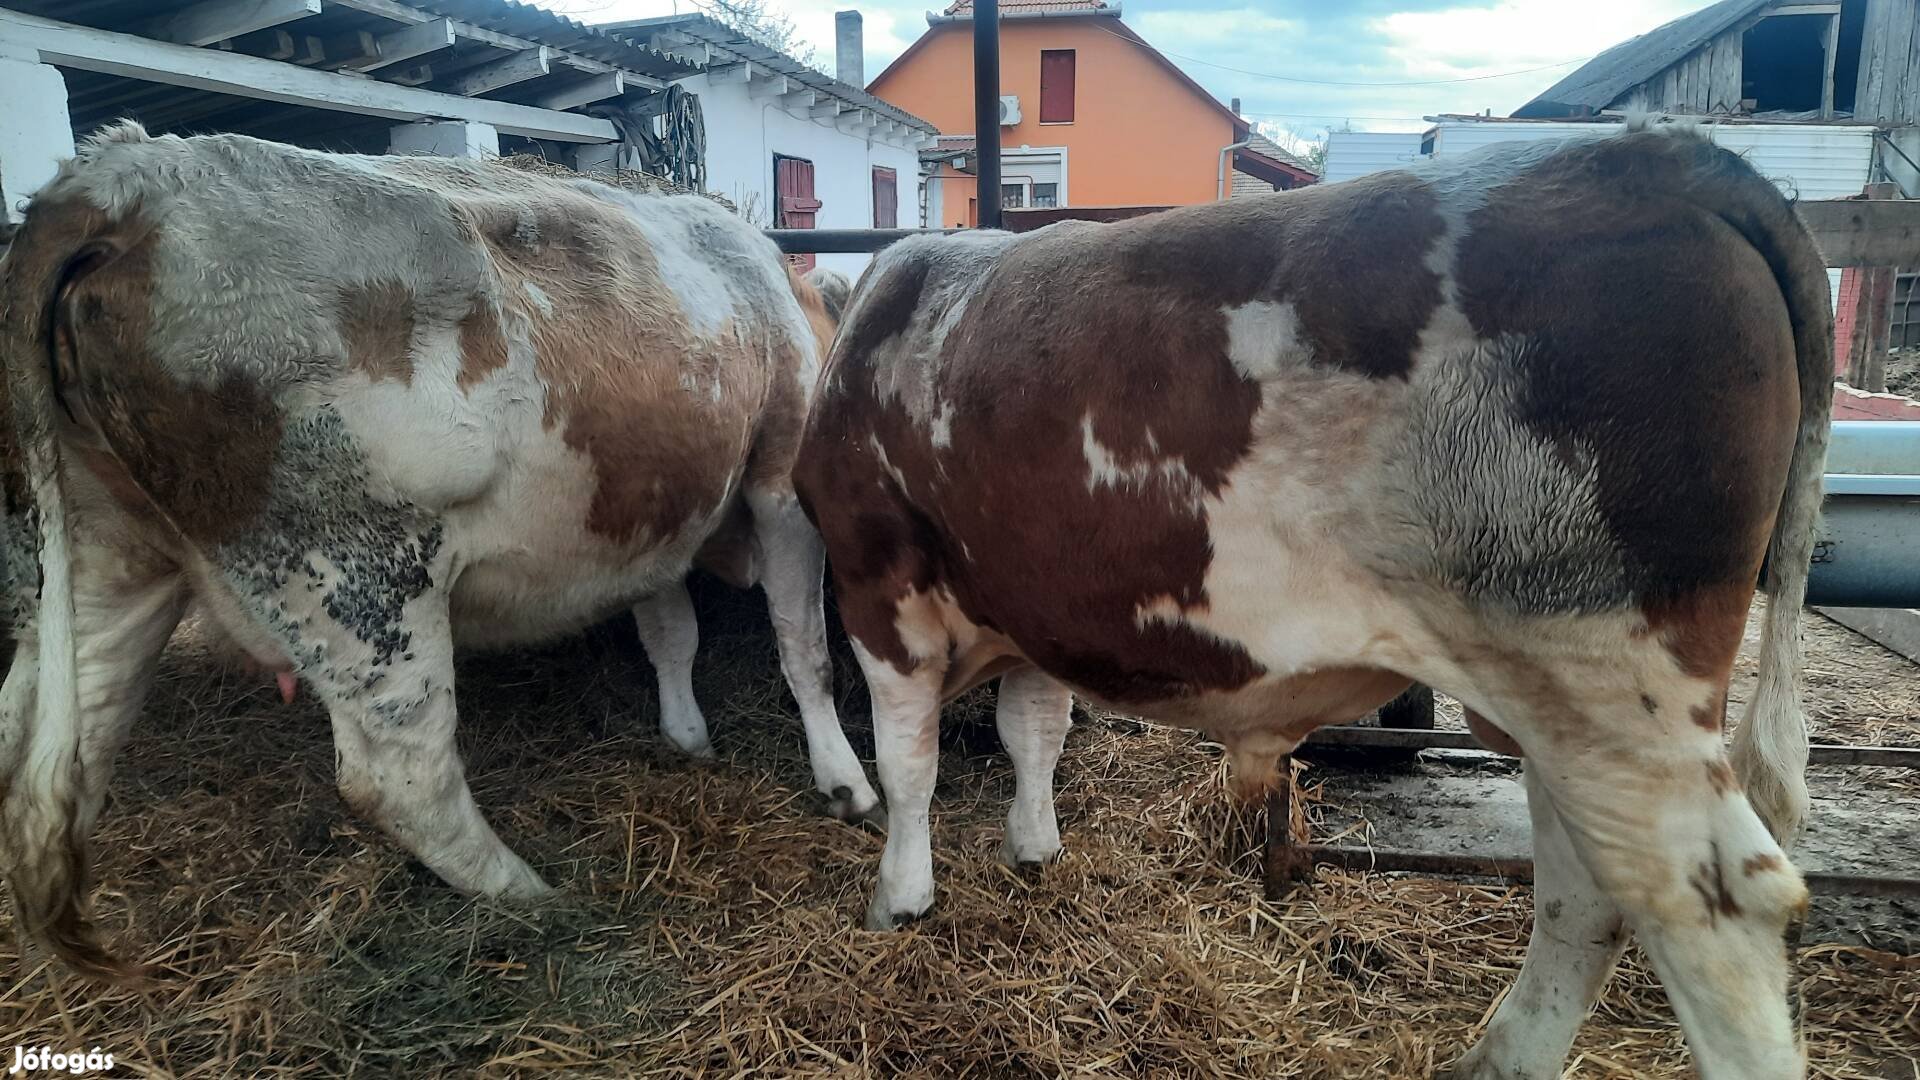 Eladó 5éves hasas tehén 15hónapos bika